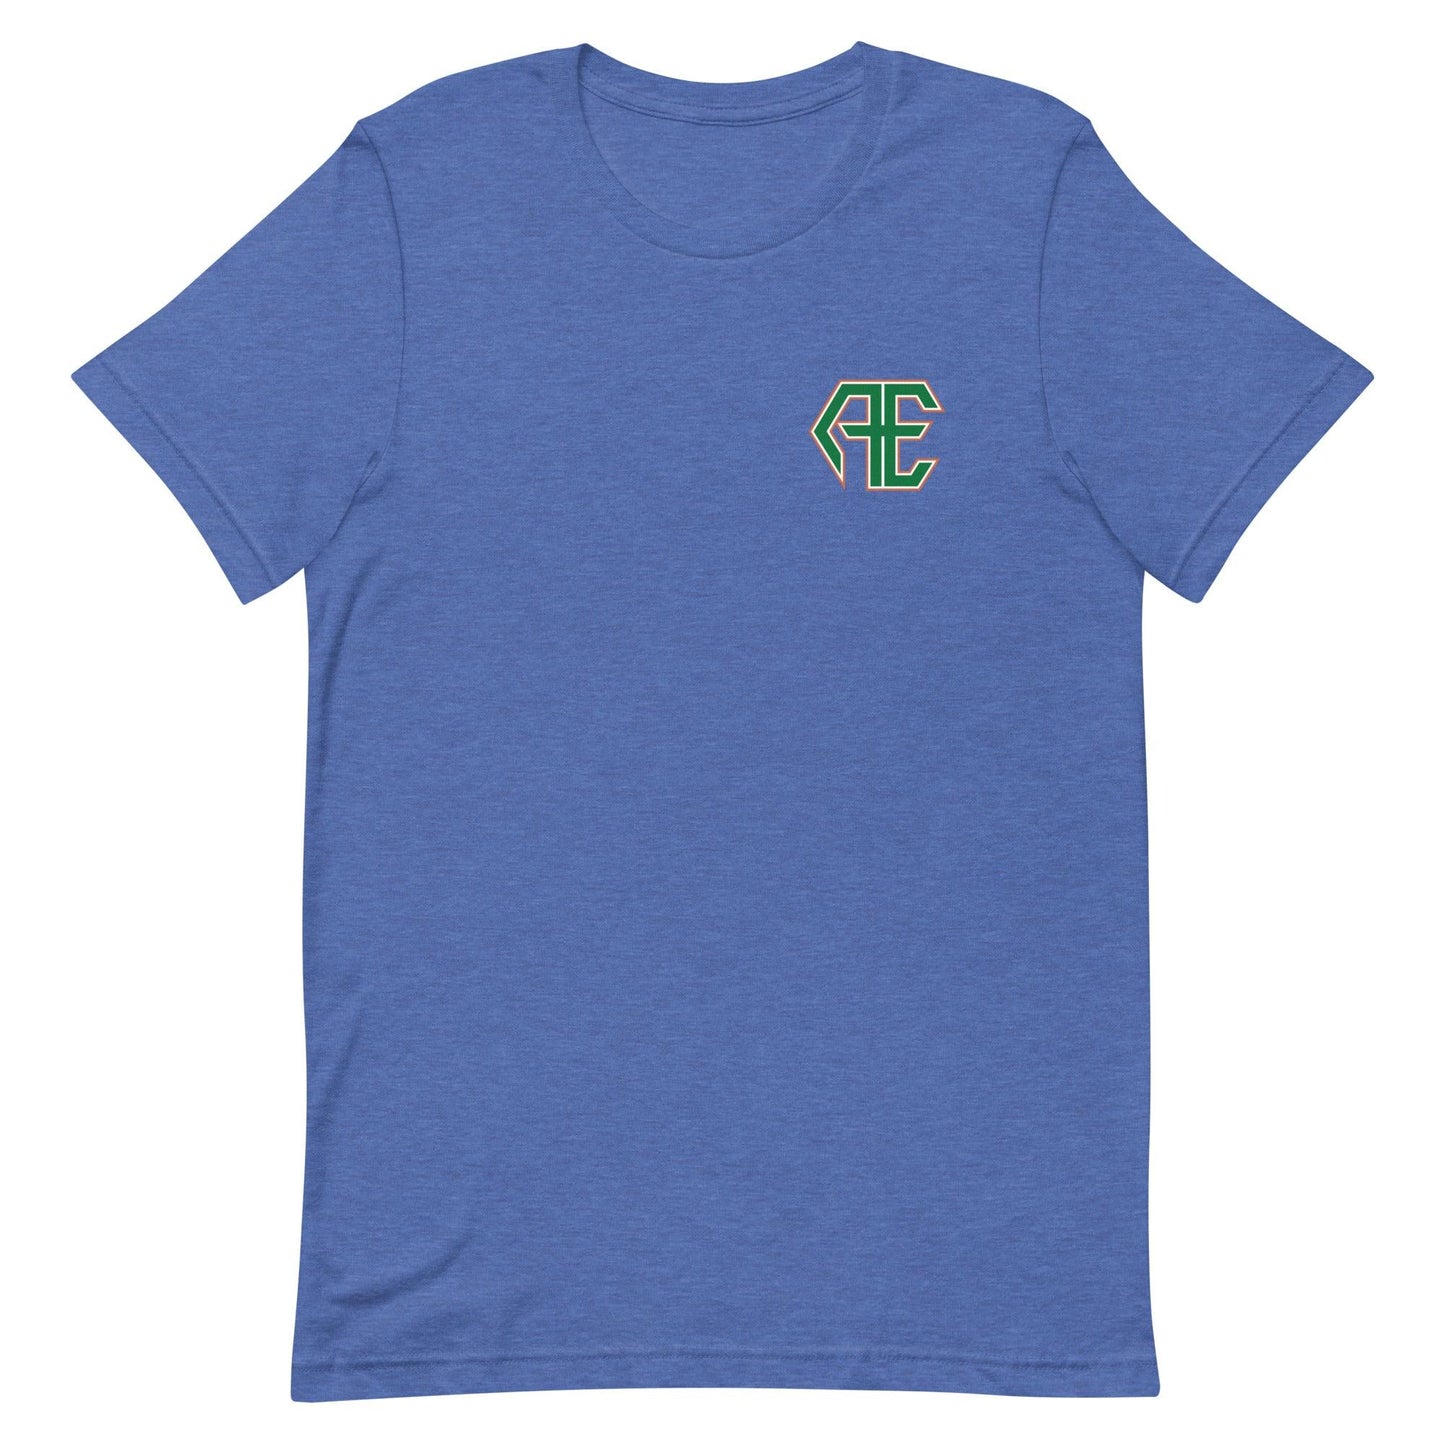 Asher Eddins "Essential" t-shirt - Fan Arch